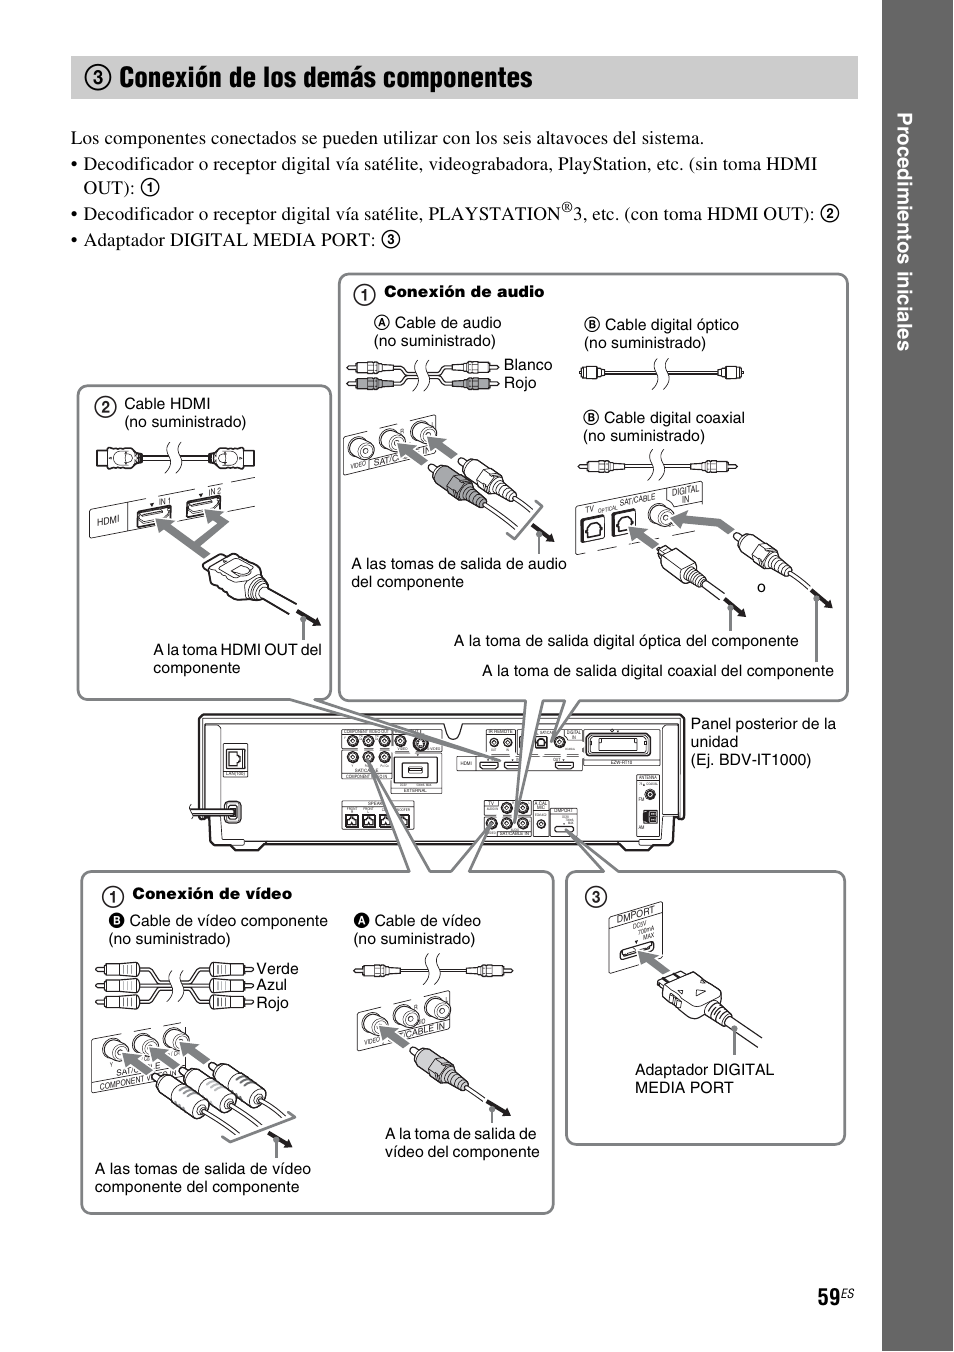 3 conexión de los demás componentes, R/l) (59), 3conexión de los demás componentes | Proce d im ient os in icia les | Sony BDV-IS1000 Manual del usuario | Página 59 / 315